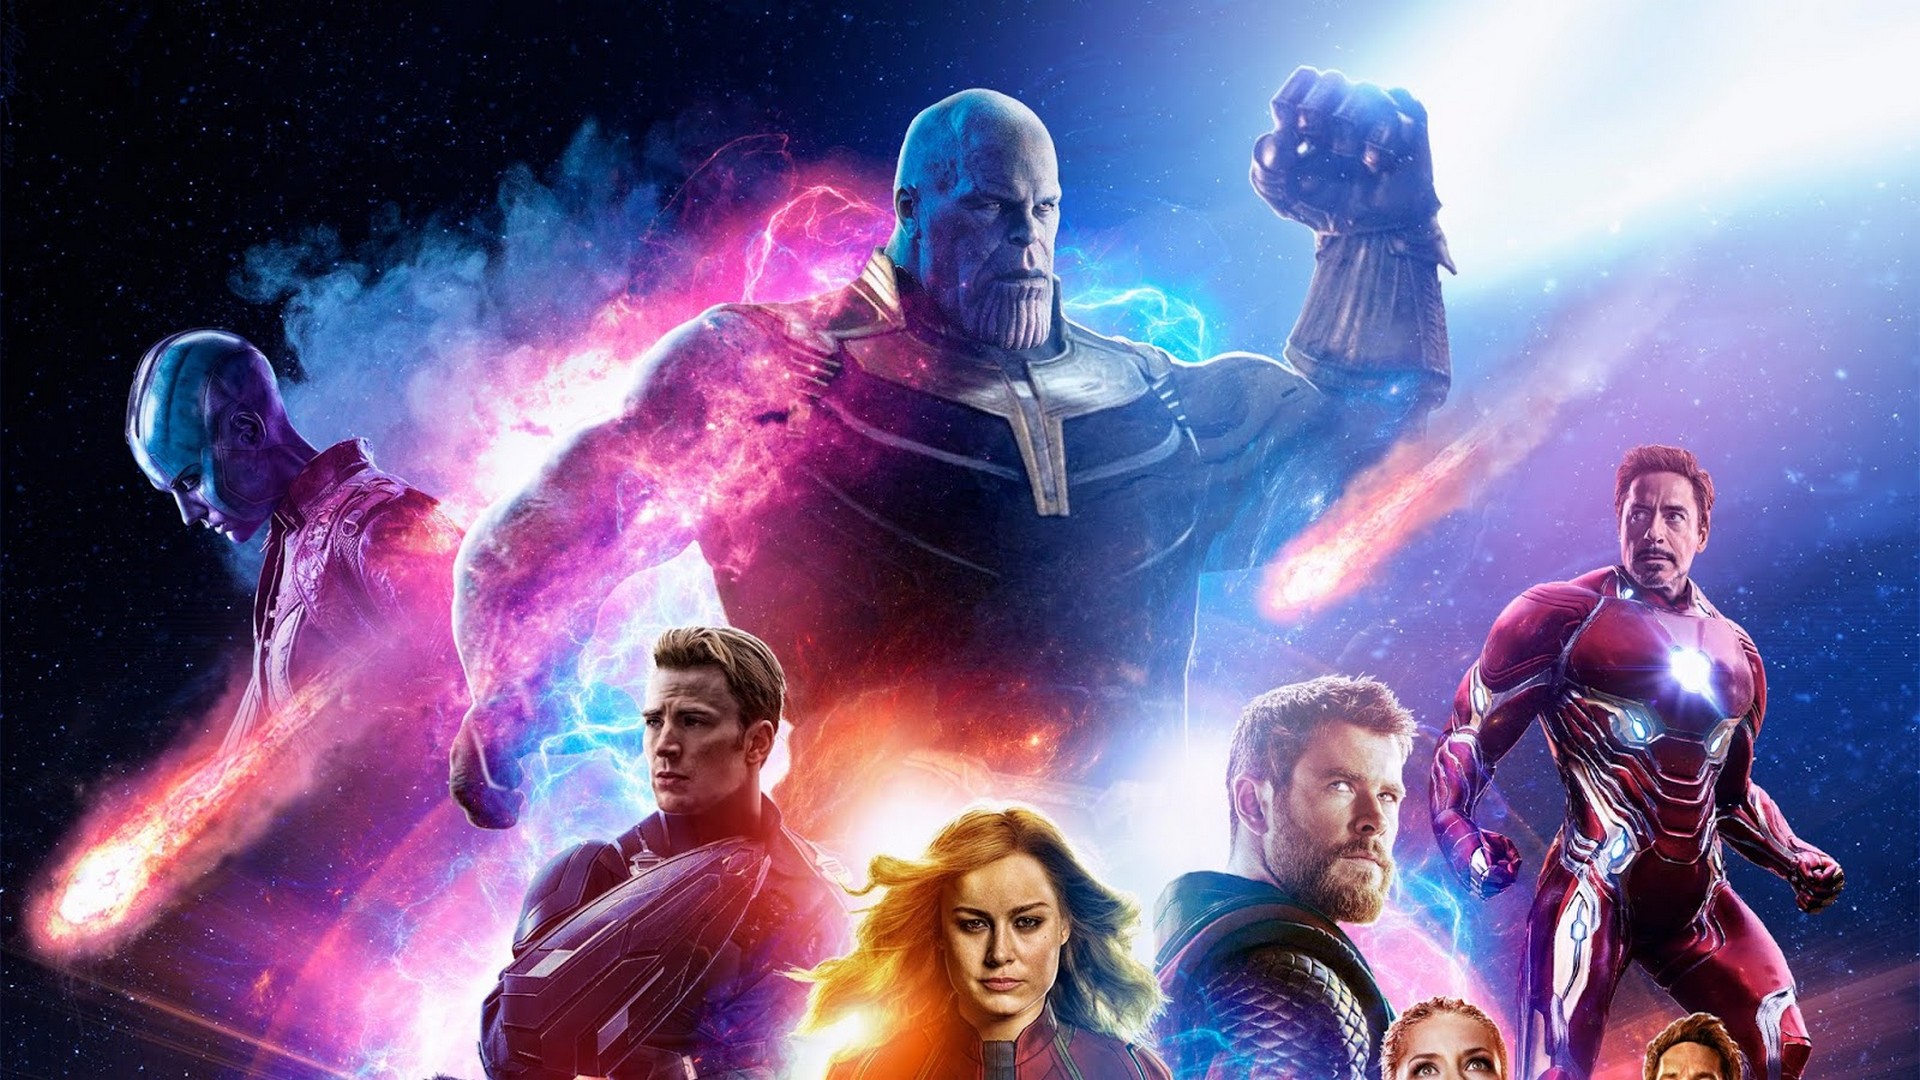 Avengers Endgame 2019 Movie Wallpaper 2019 Movie Poster Wallpaper HD